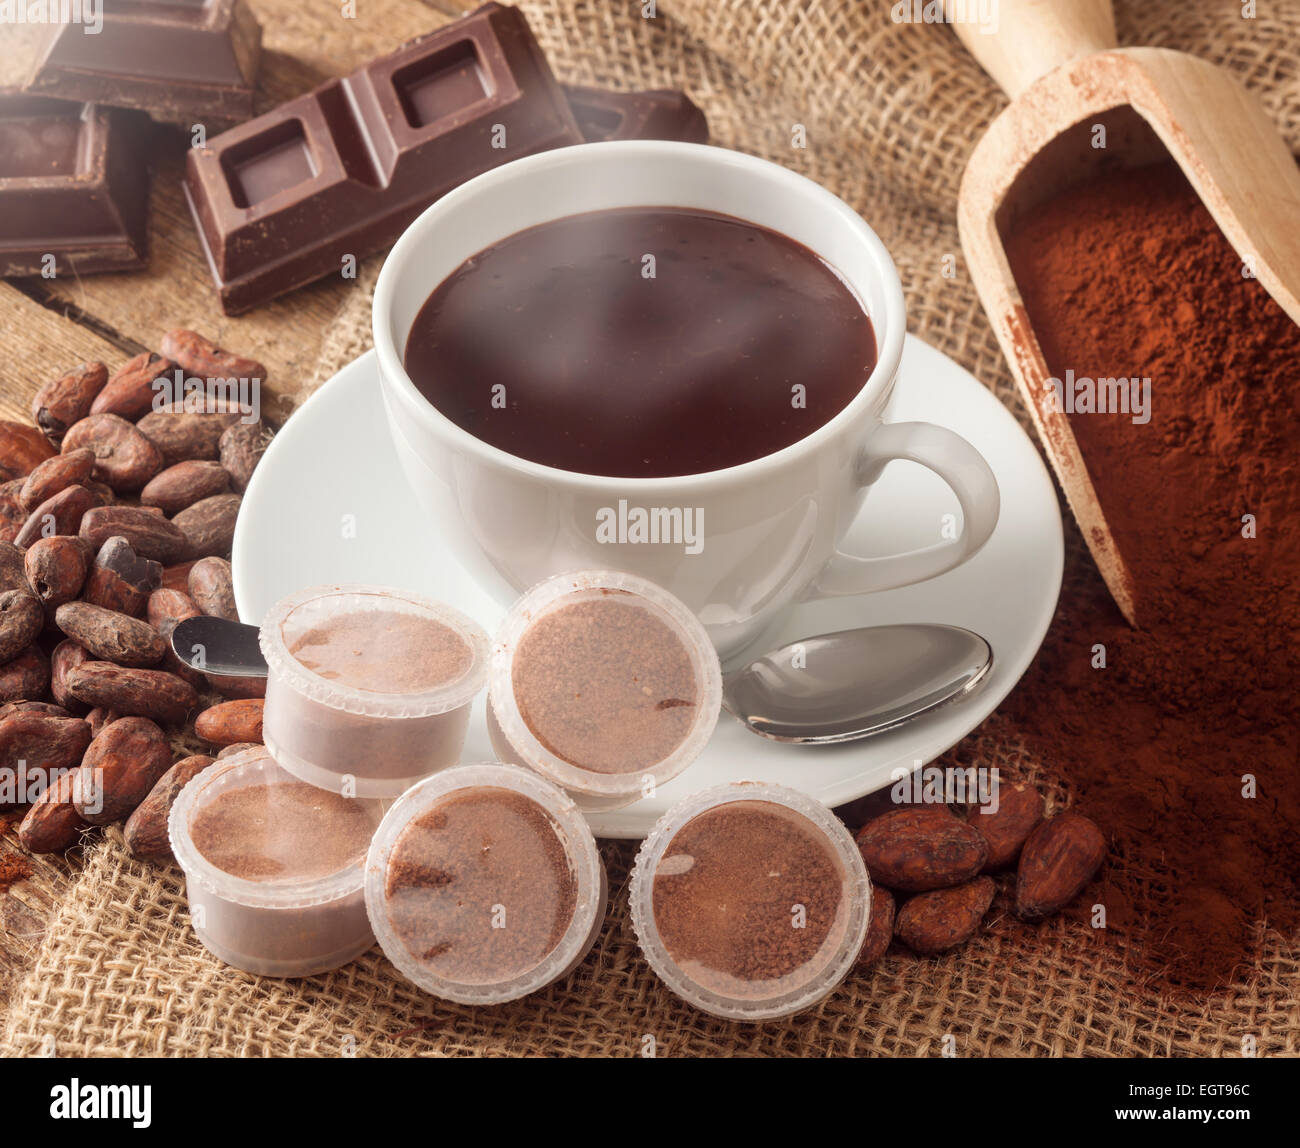 Tasse heiße Schokolade mit Hülsen, Kakaopulver, Kakaobohnen und Schokolade. Stockfoto